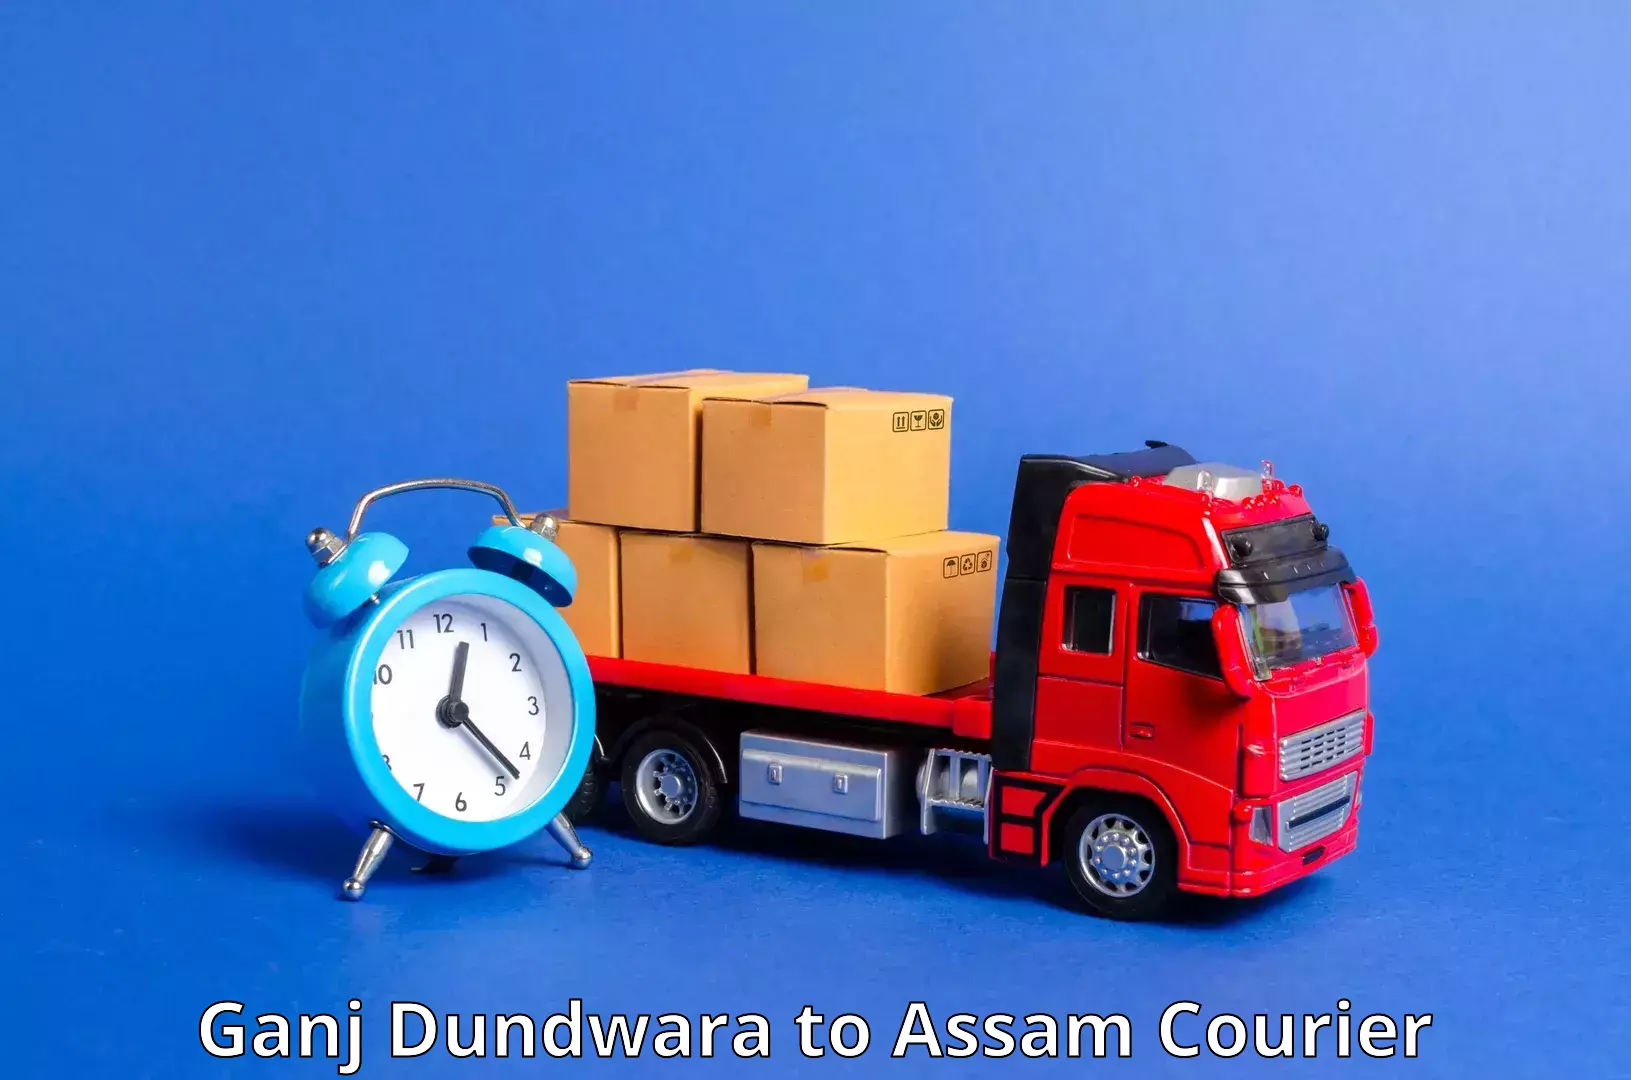 Global delivery options Ganj Dundwara to Assam